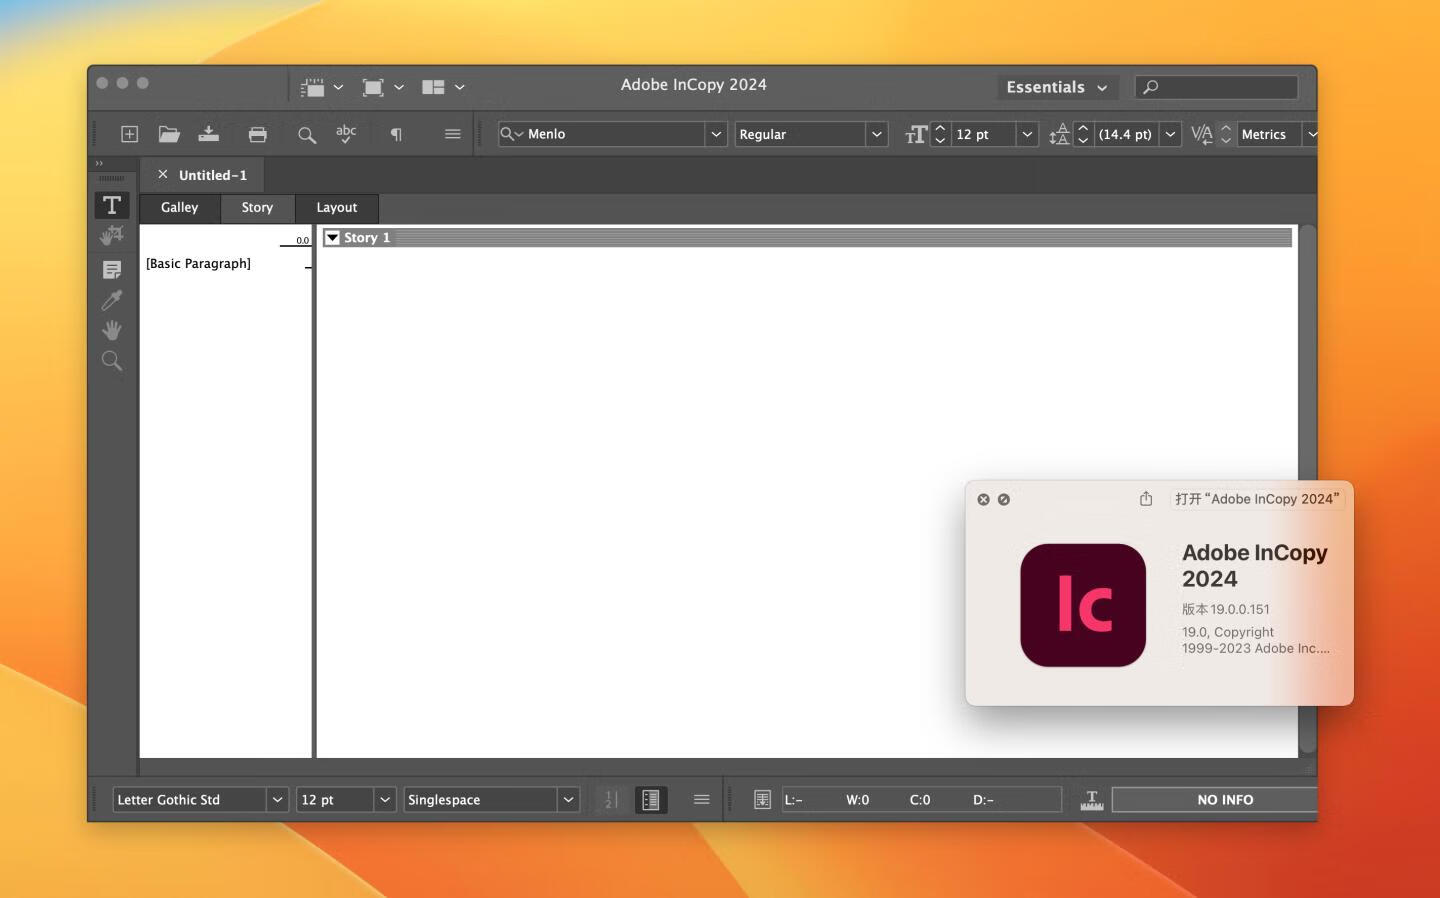 instal the new version for mac Adobe InCopy 2024 v19.0.0.151